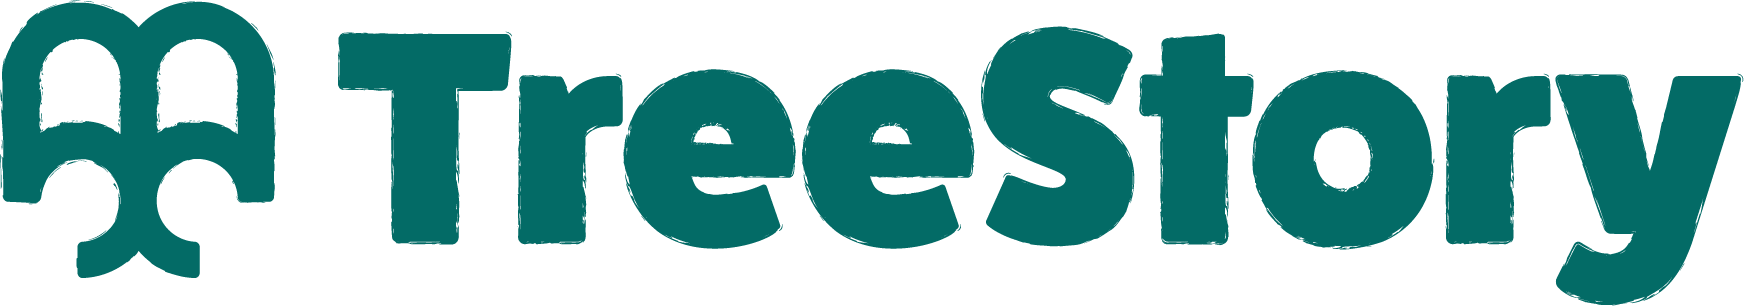 Tree story logo